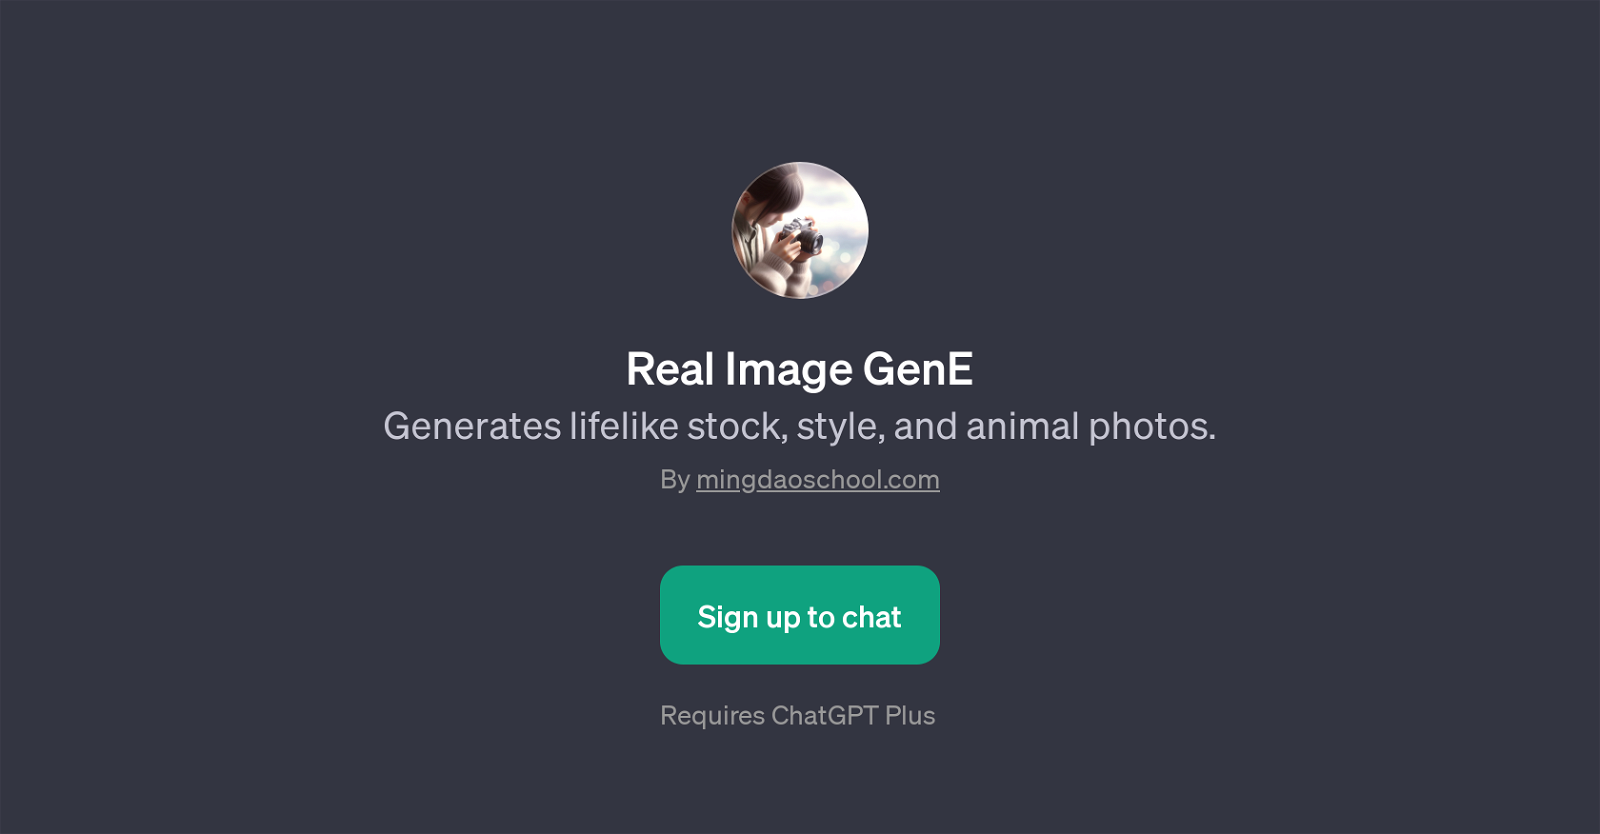 Real Image GenE website